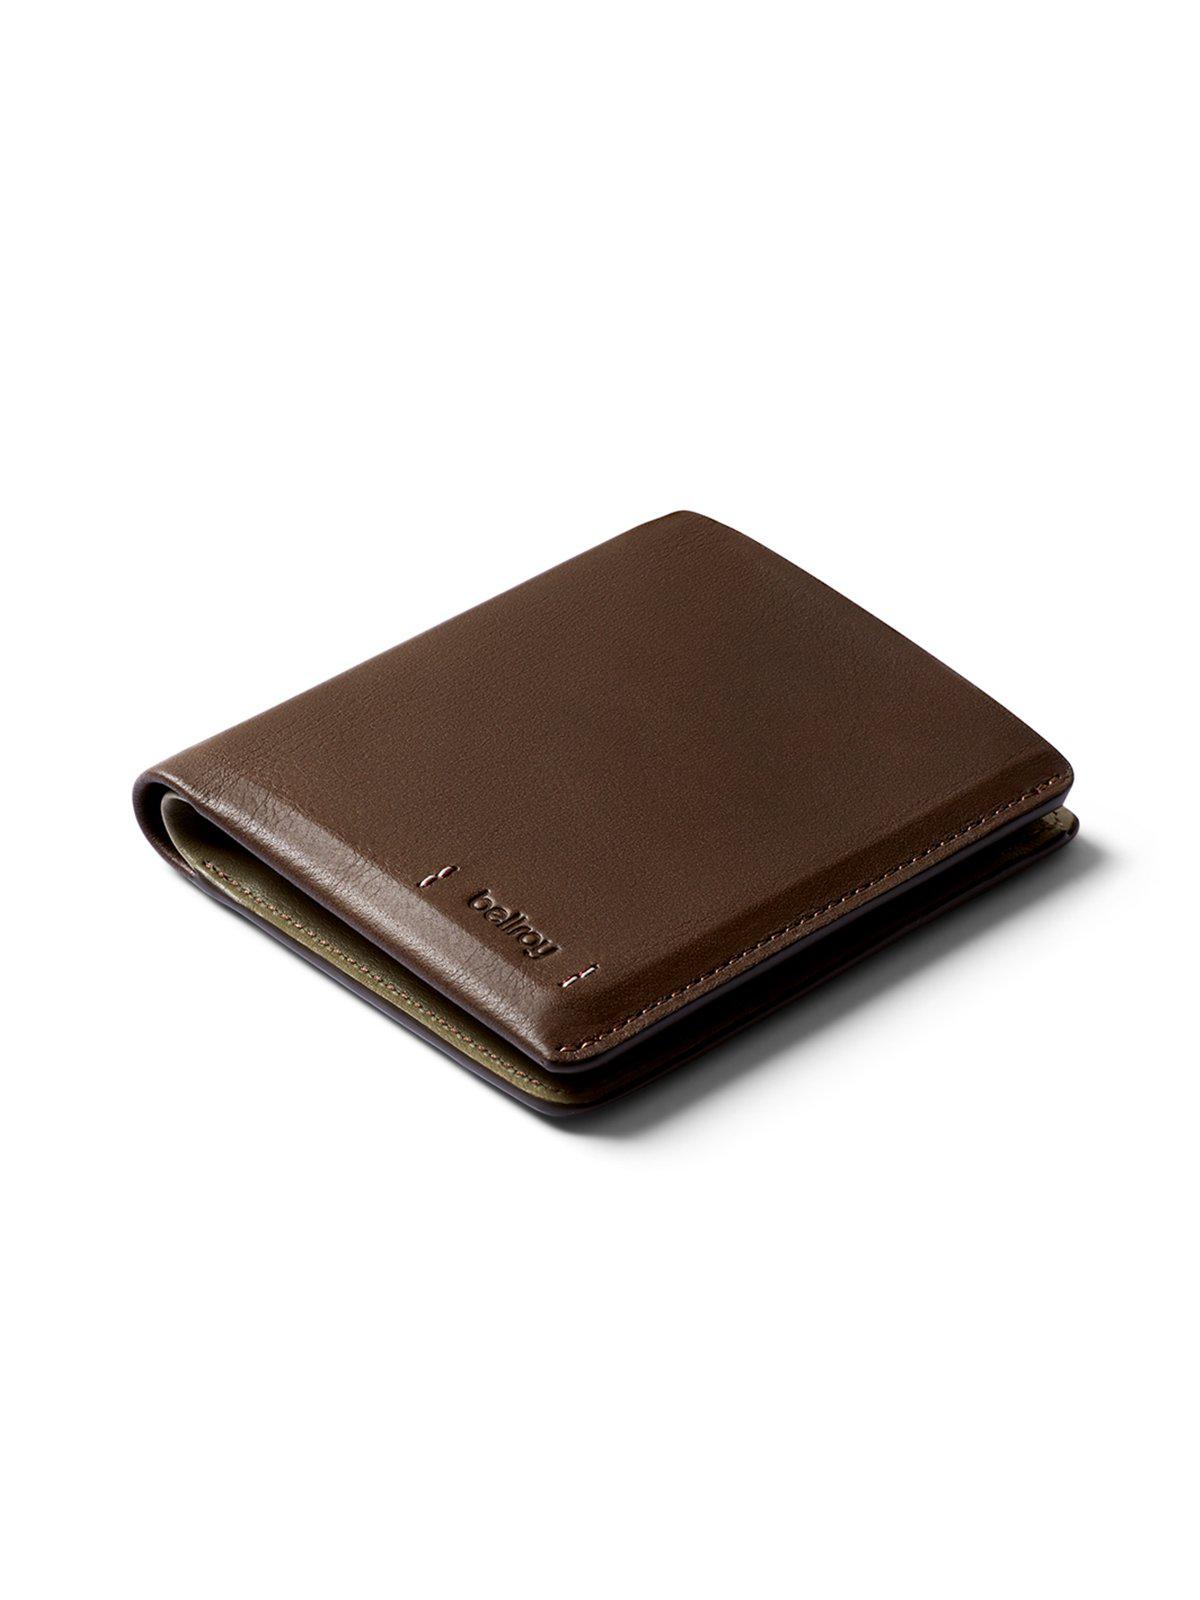 Bellroy Note Sleeve Wallet Premium Edition Darkwood RFID